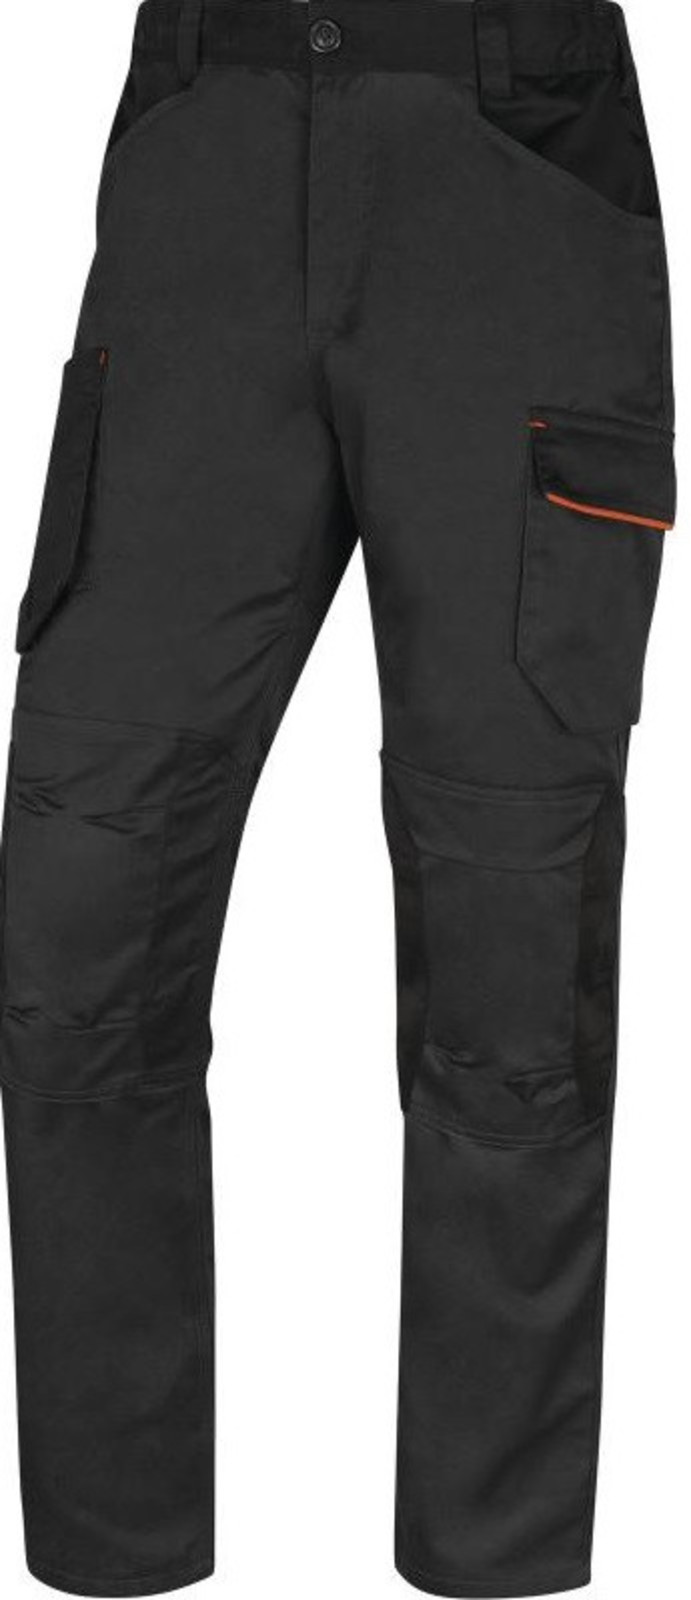 Pracovné nohavice Delta Plus Mach 2 - veľkosť: L, farba: sivá/oranžová